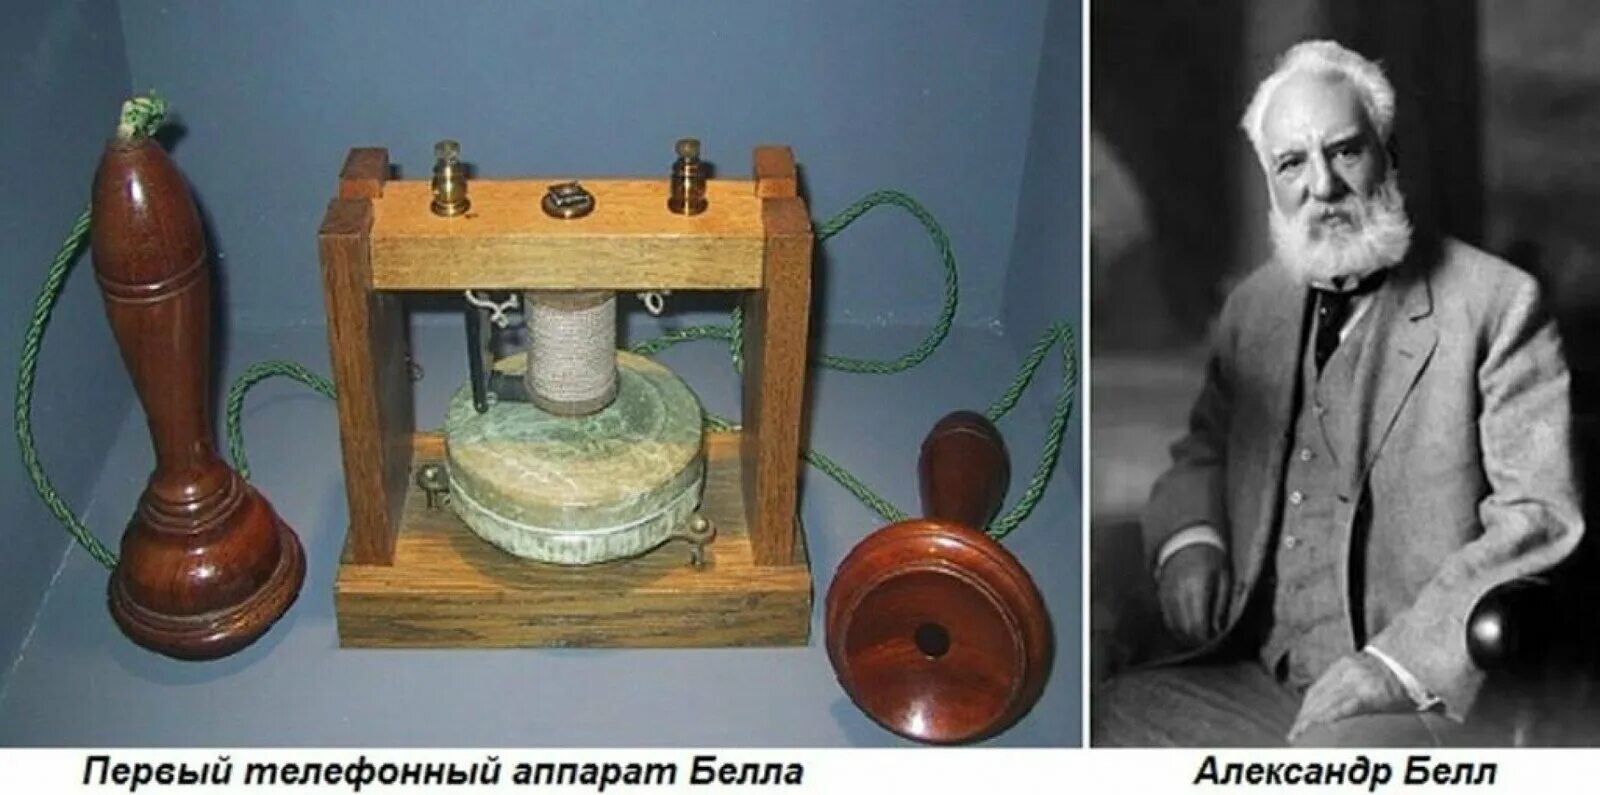 В 1876 году американец а. Белл изобрел телефон. Телефон 1876 года